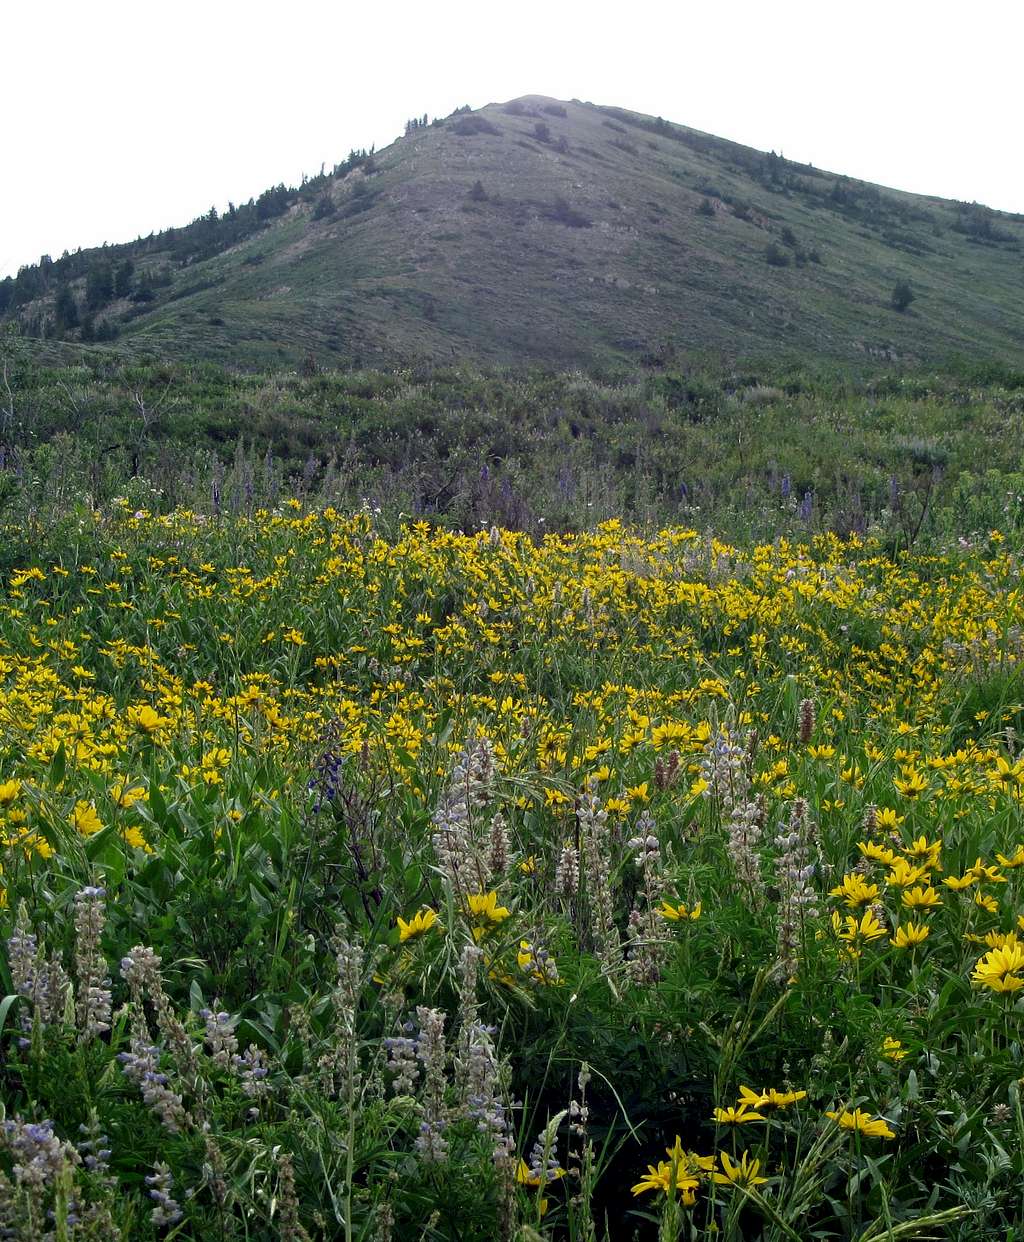 Wildflowers below Provo Peak